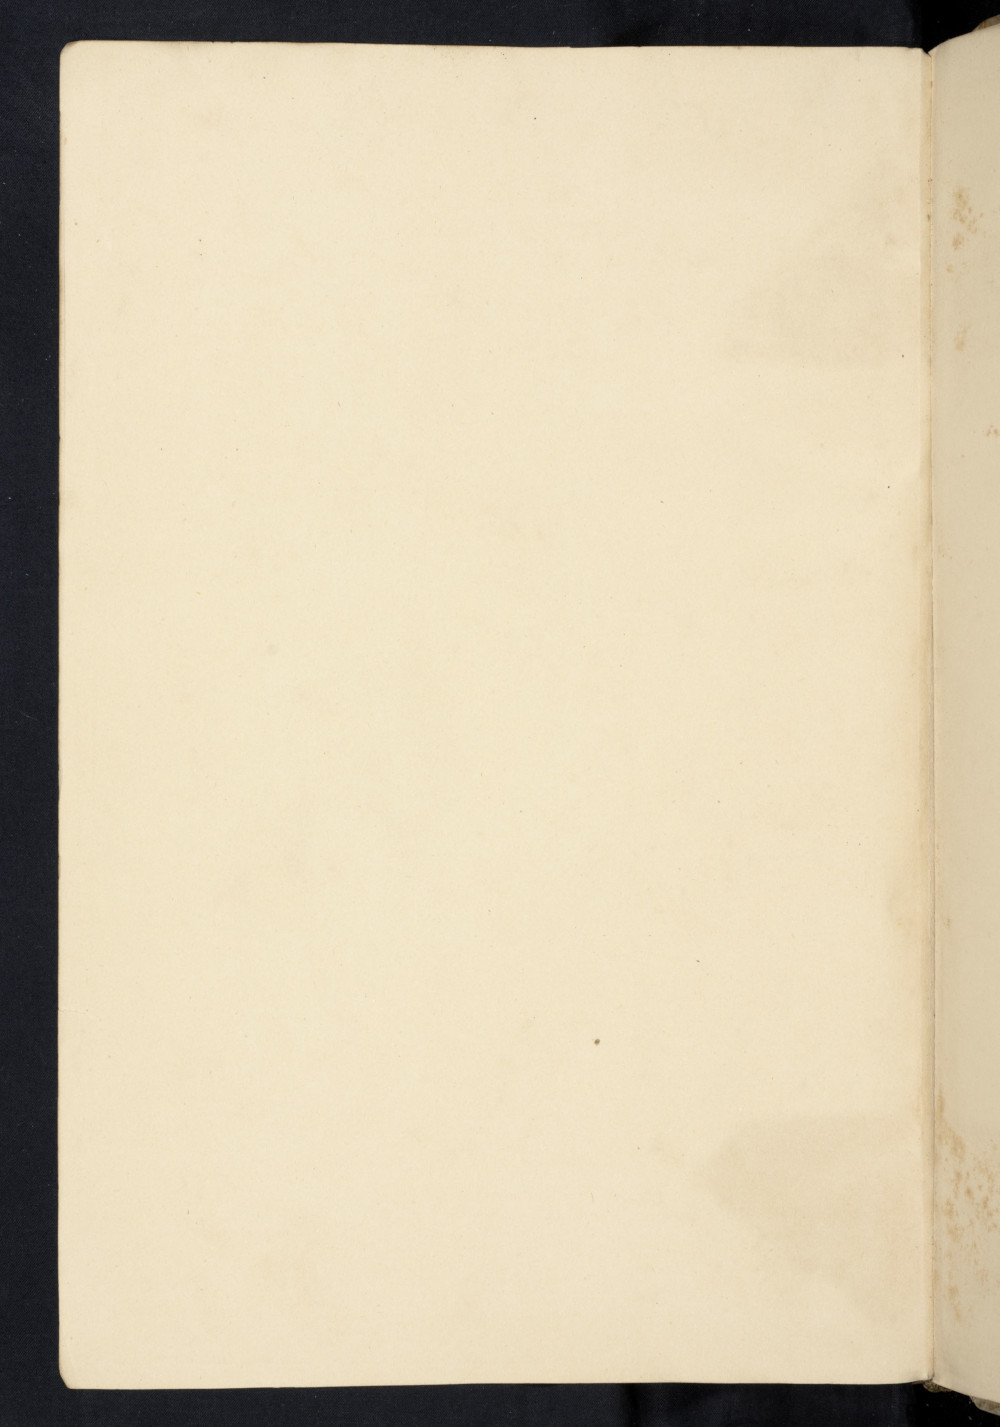 Folio 261 v